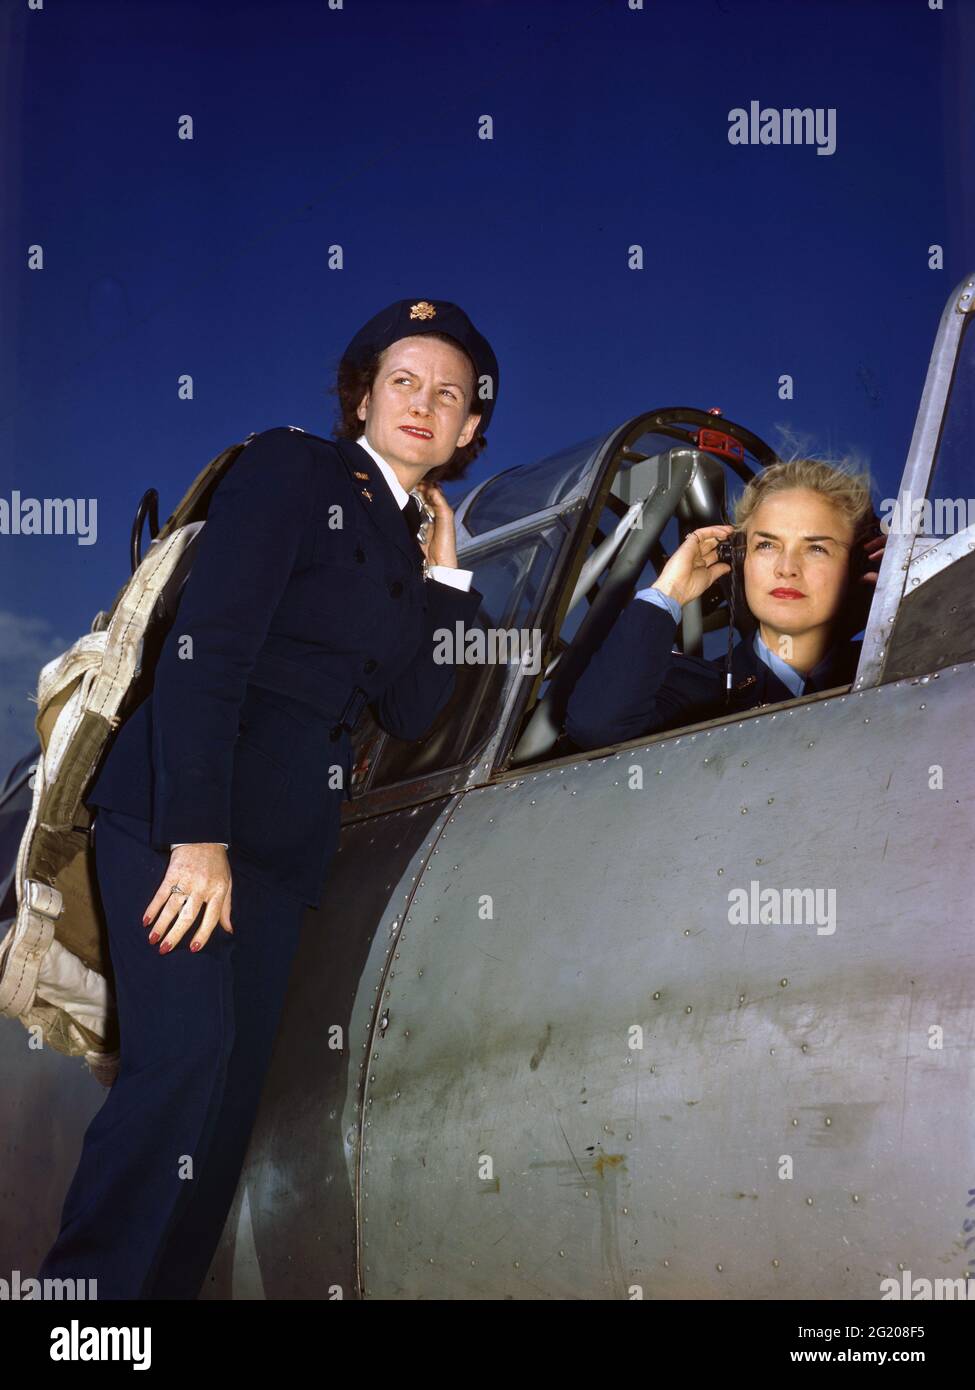 Donne Air Force Service Pilot Anne McClellan regola le sue cuffie nell'abitacolo di un BT-13, mentre Ann Johnson si trova sull'ala dell'aereo, nessuna posizione, circa 1944. (Foto di US Army Air Force/RBM Vintage Images) Foto Stock